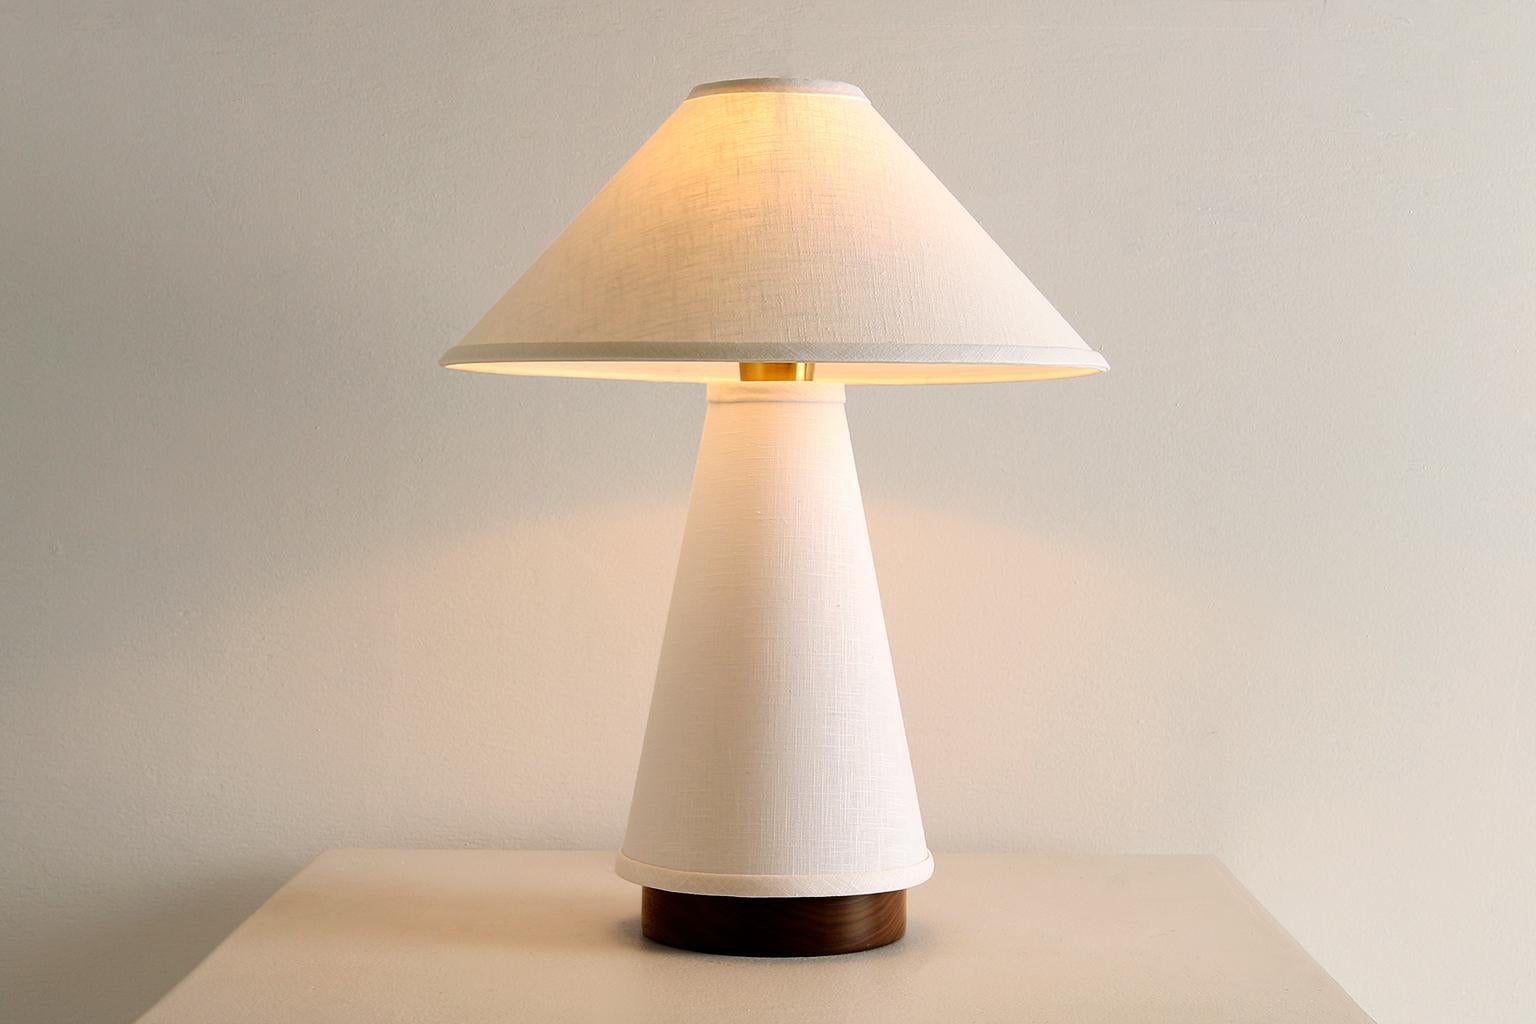 La lampe de table Linden se caractérise par un abat-jour et un corps de lampe en lin crème, une base en noyer massif et des détails en laiton. Étude de la dualité, la pièce explore l'équilibre entre les tissus souples et fluides et les formes